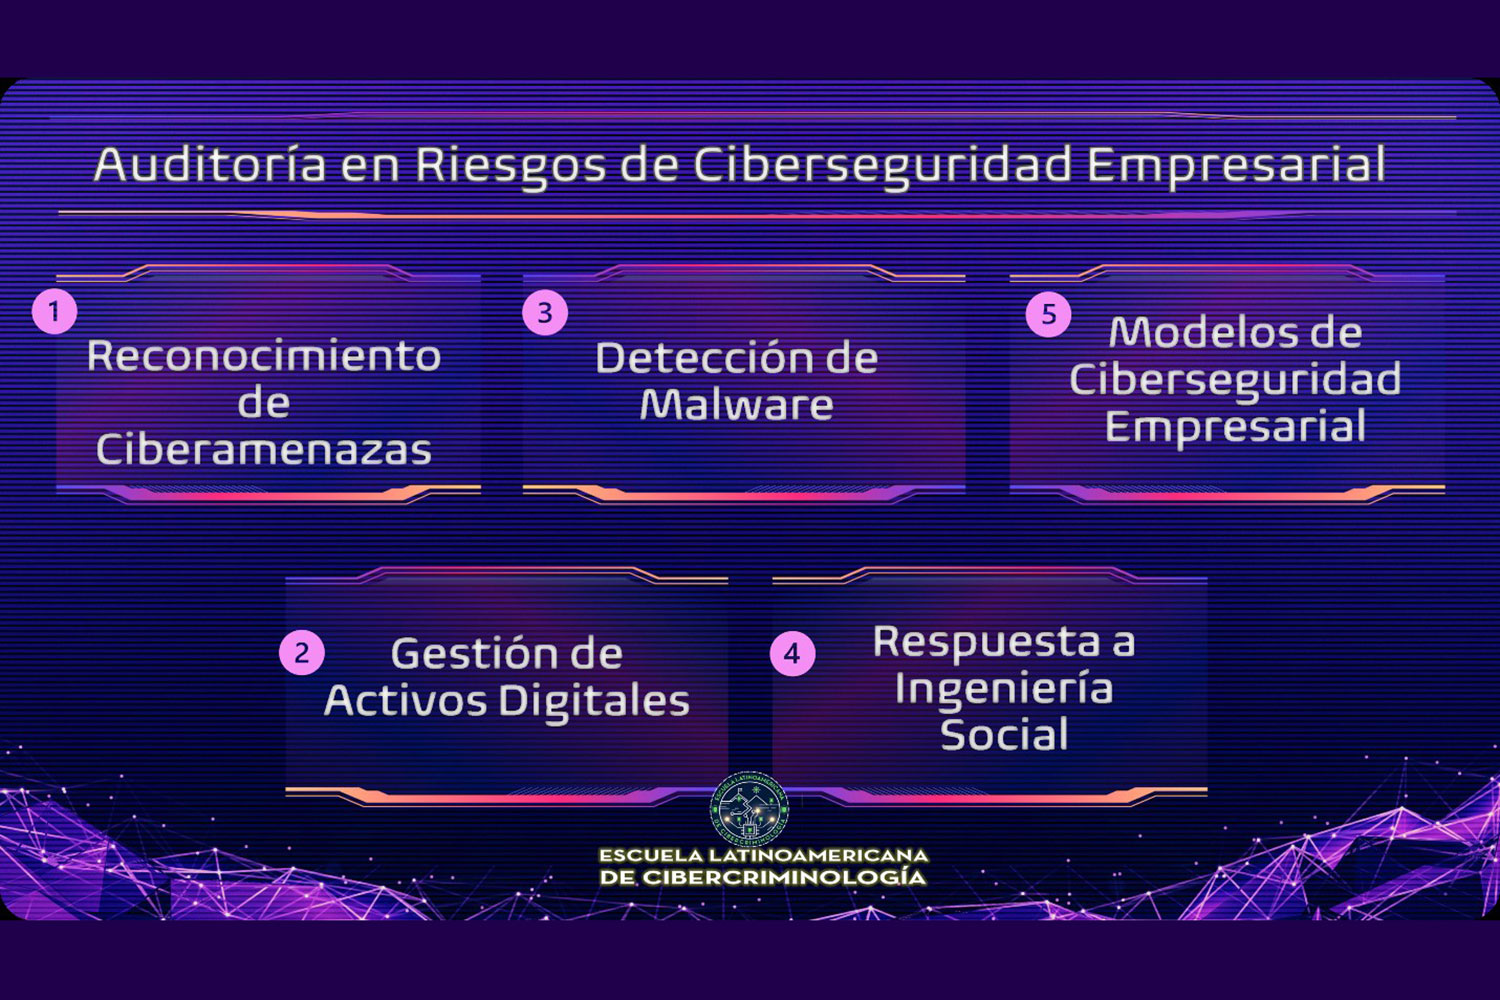 Auditoría en riesgos de ciberseguridad empresarial. Escuela Latinoamericana de Cibercriminología.